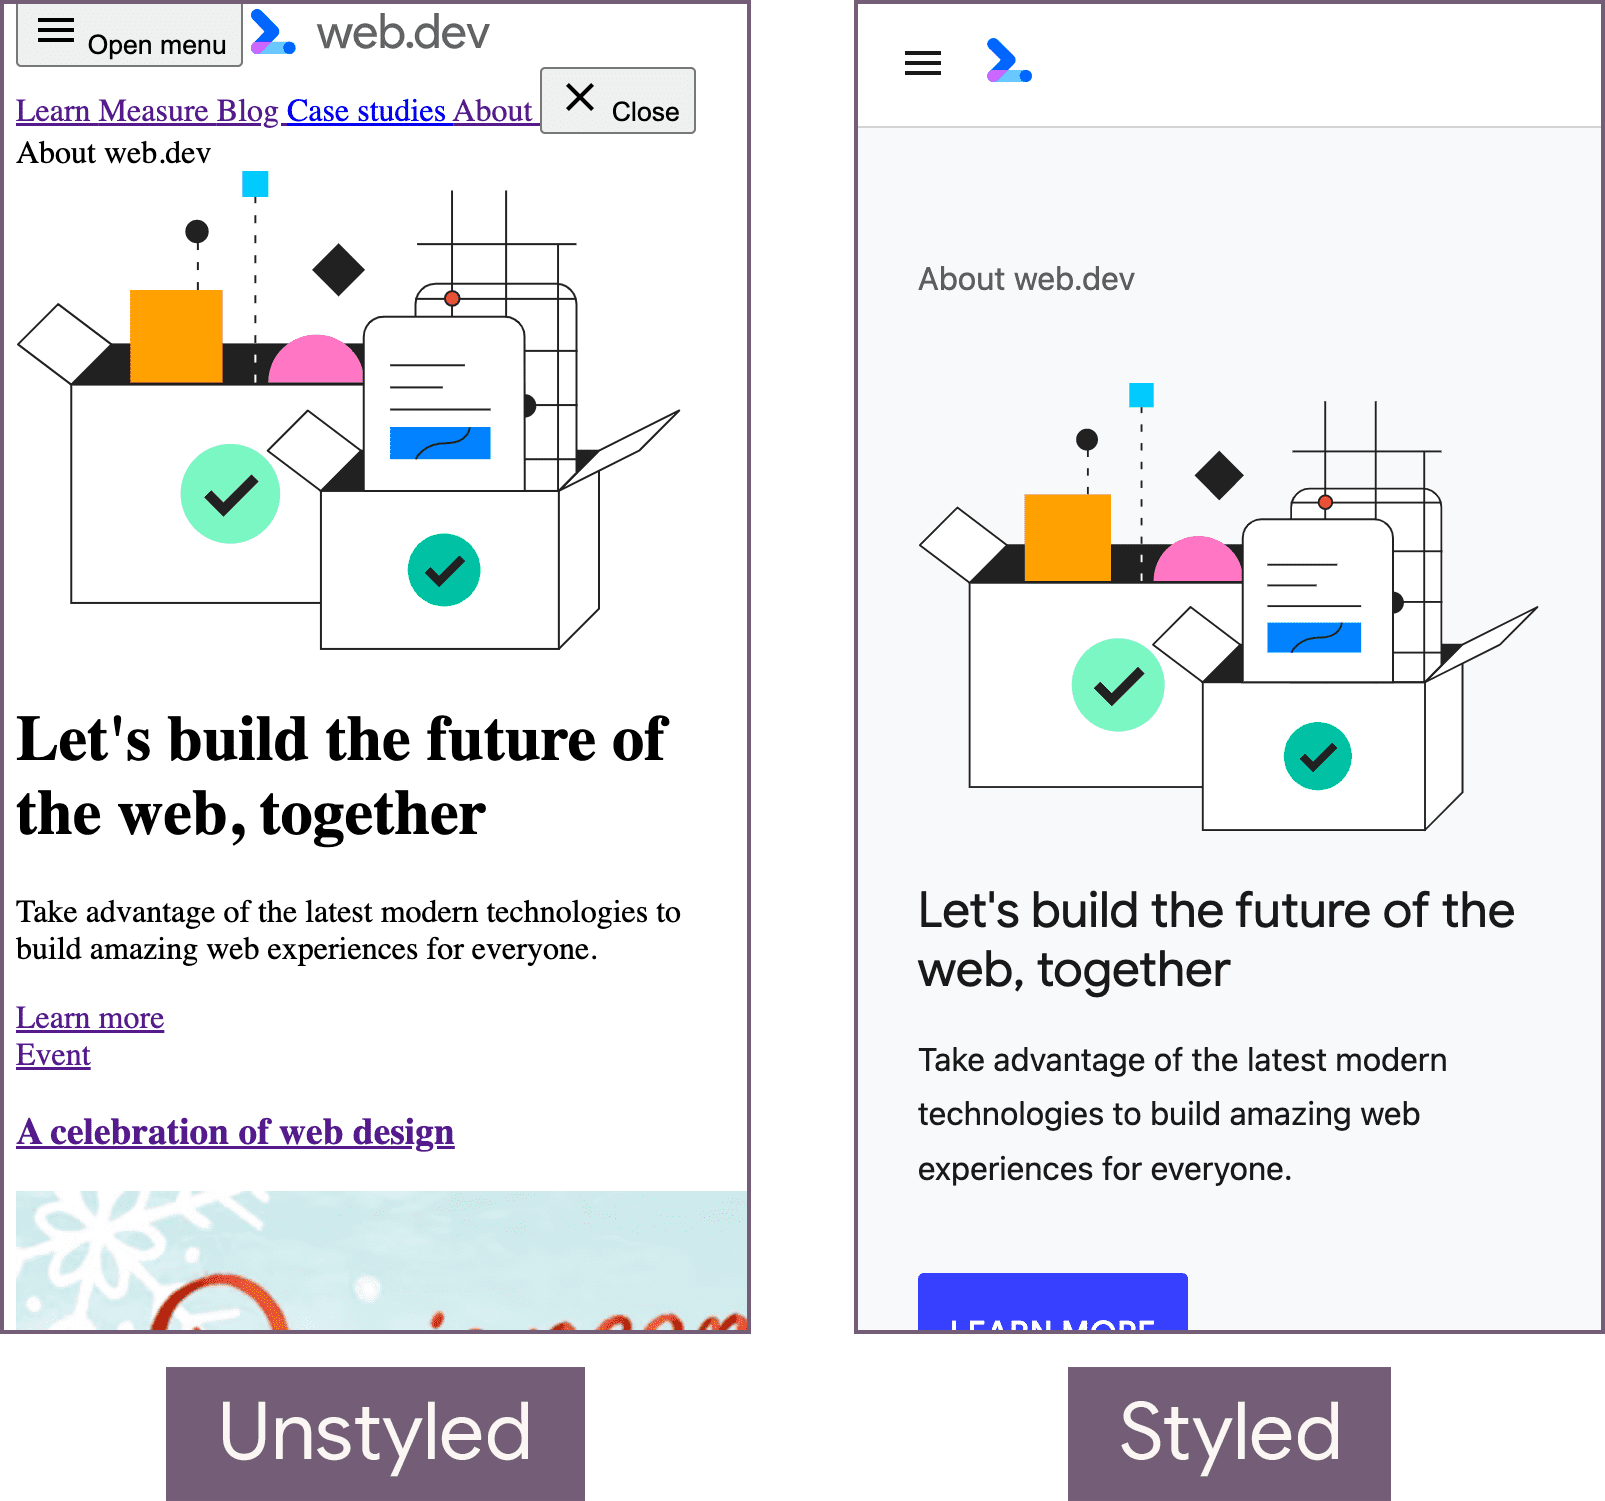 Halaman beranda web.dev dalam keadaan tanpa gaya (kiri) dan status bergaya (kanan).